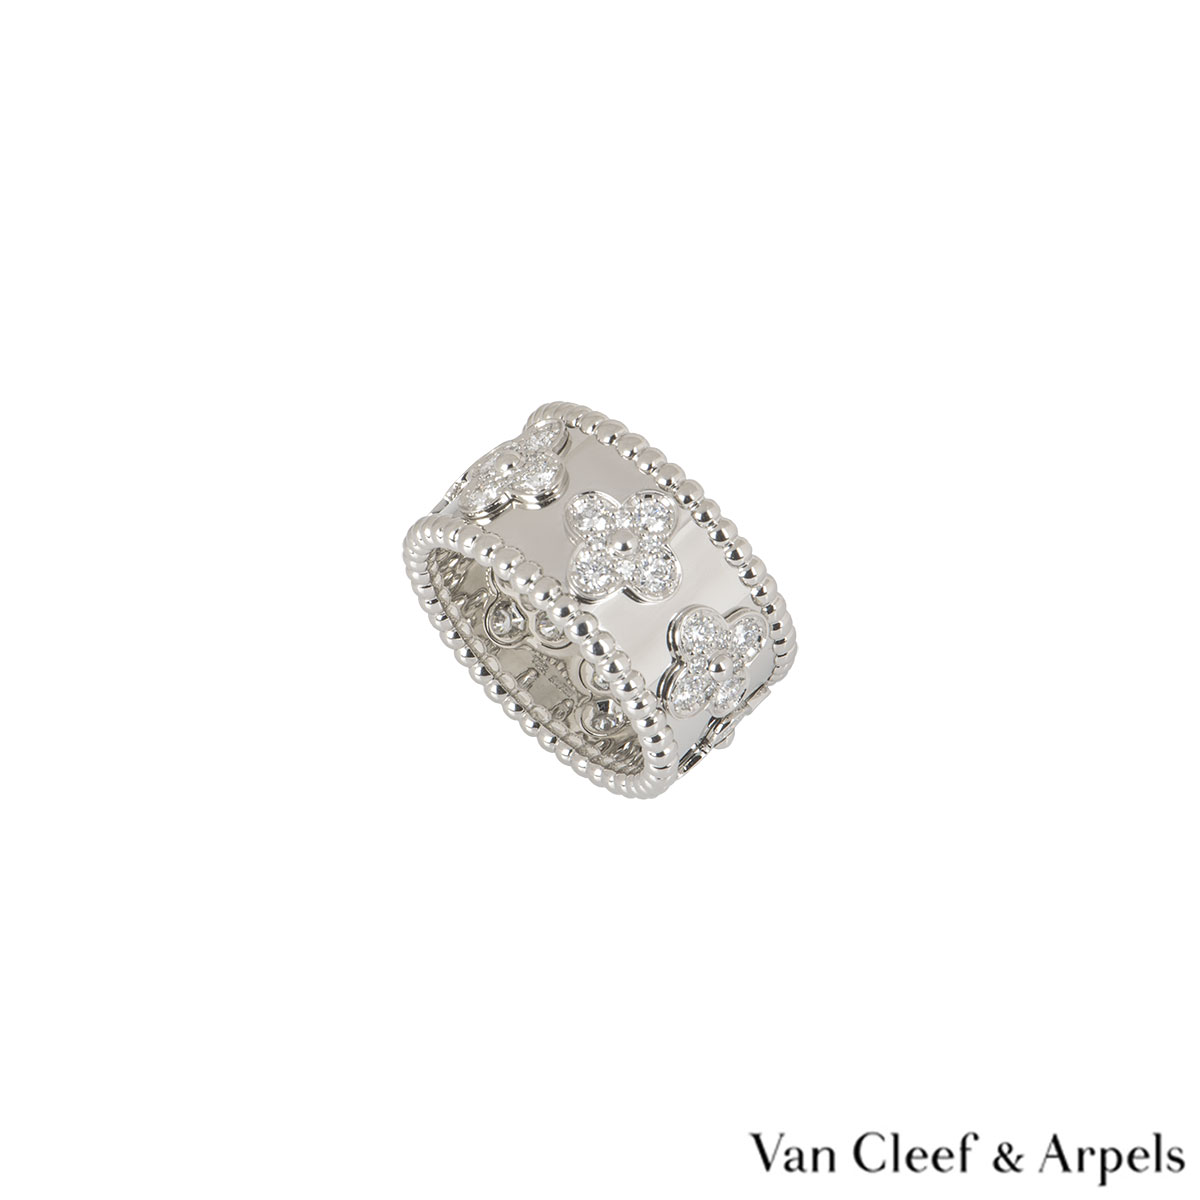 Van Cleef & Arpels 'Perlée' Clovers Ring in 18K Whit #515113